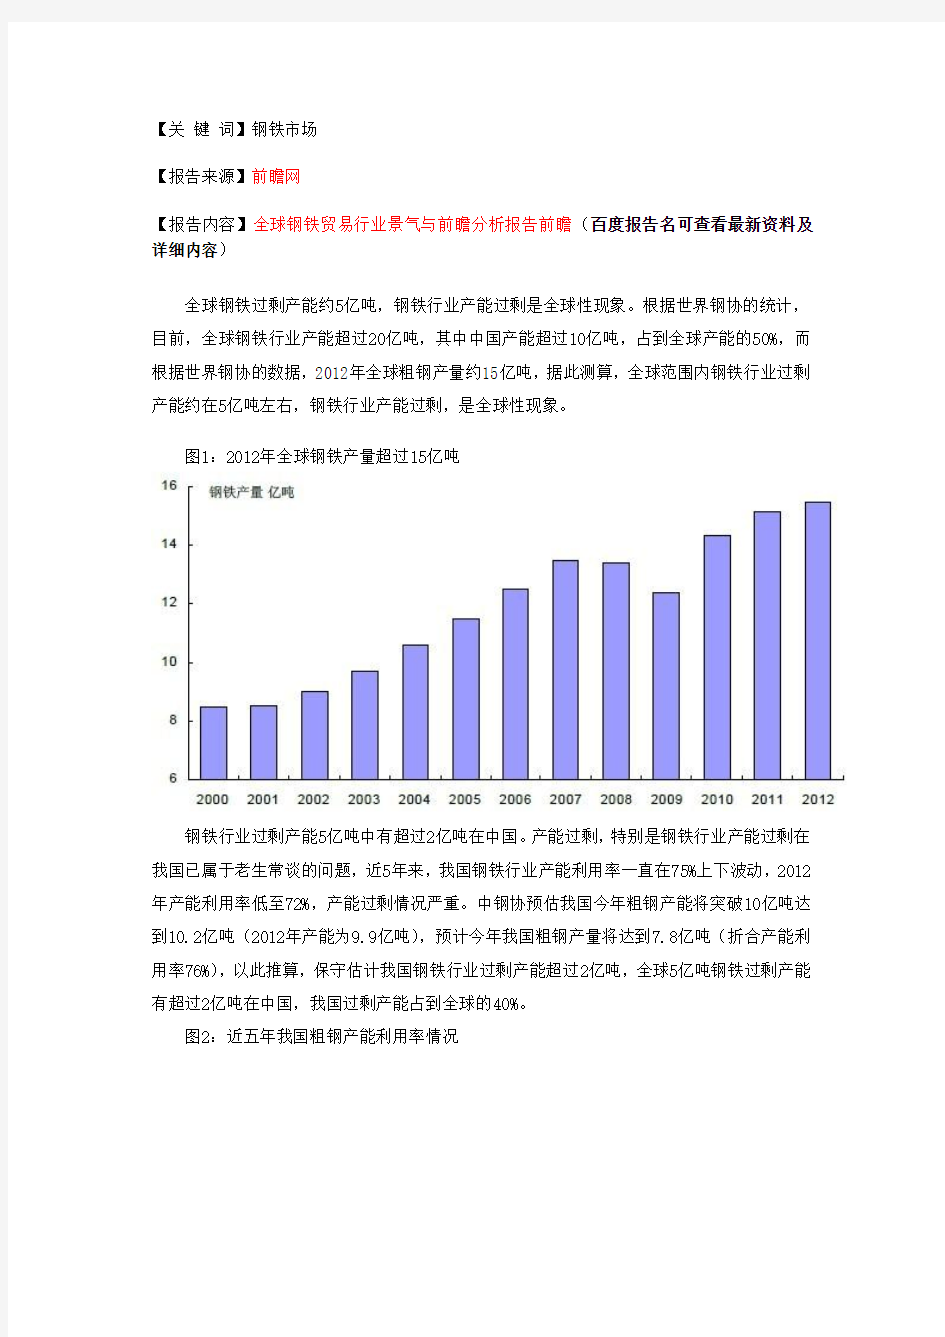 中国钢铁行业产能状况分析